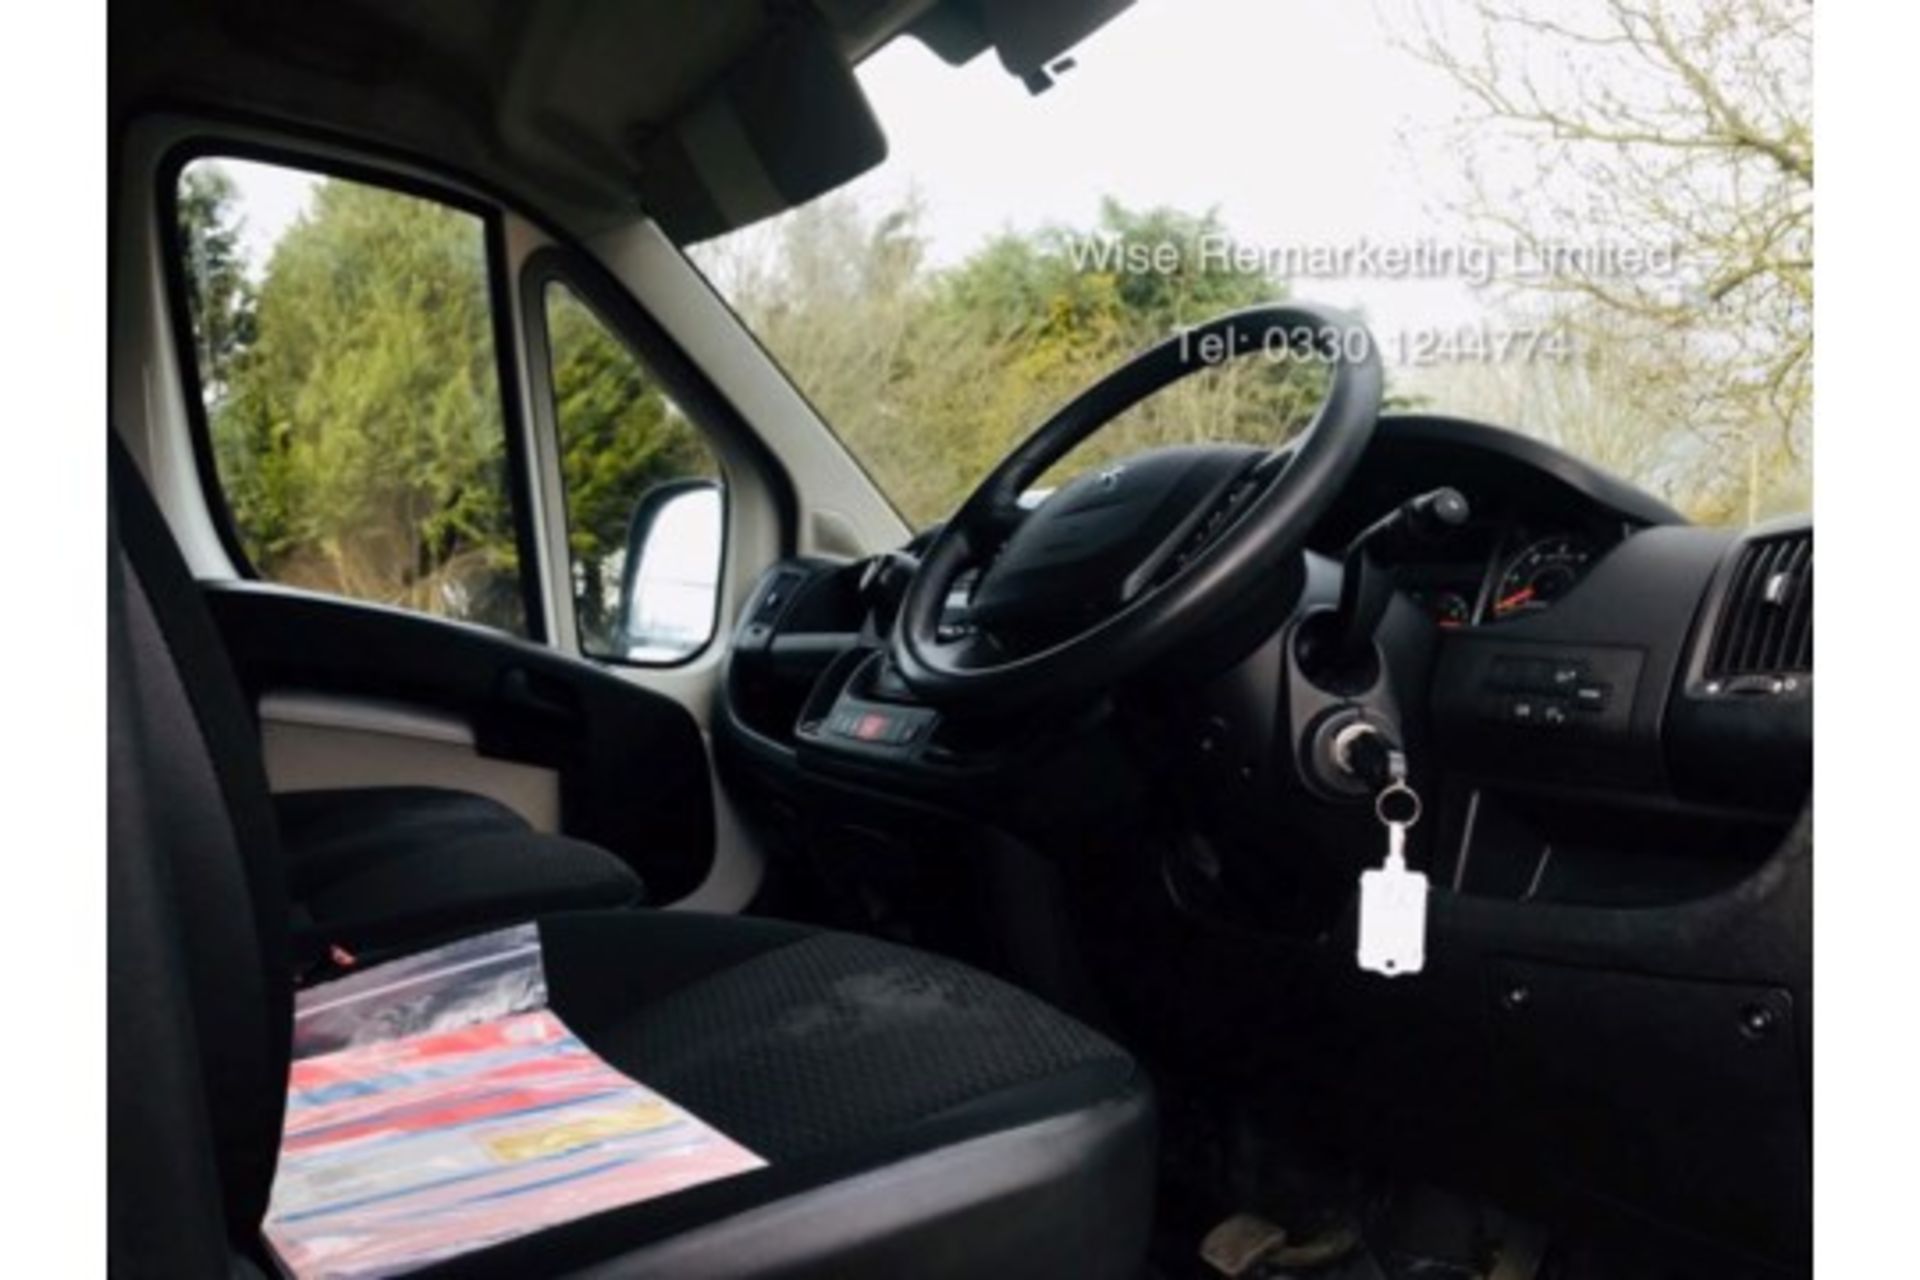 Peugeot Boxer 335 2.2 HDI (130 BHP) Luton Box Van - 6 Speed - 2017 17 Reg - Euro 6b - - Image 10 of 13